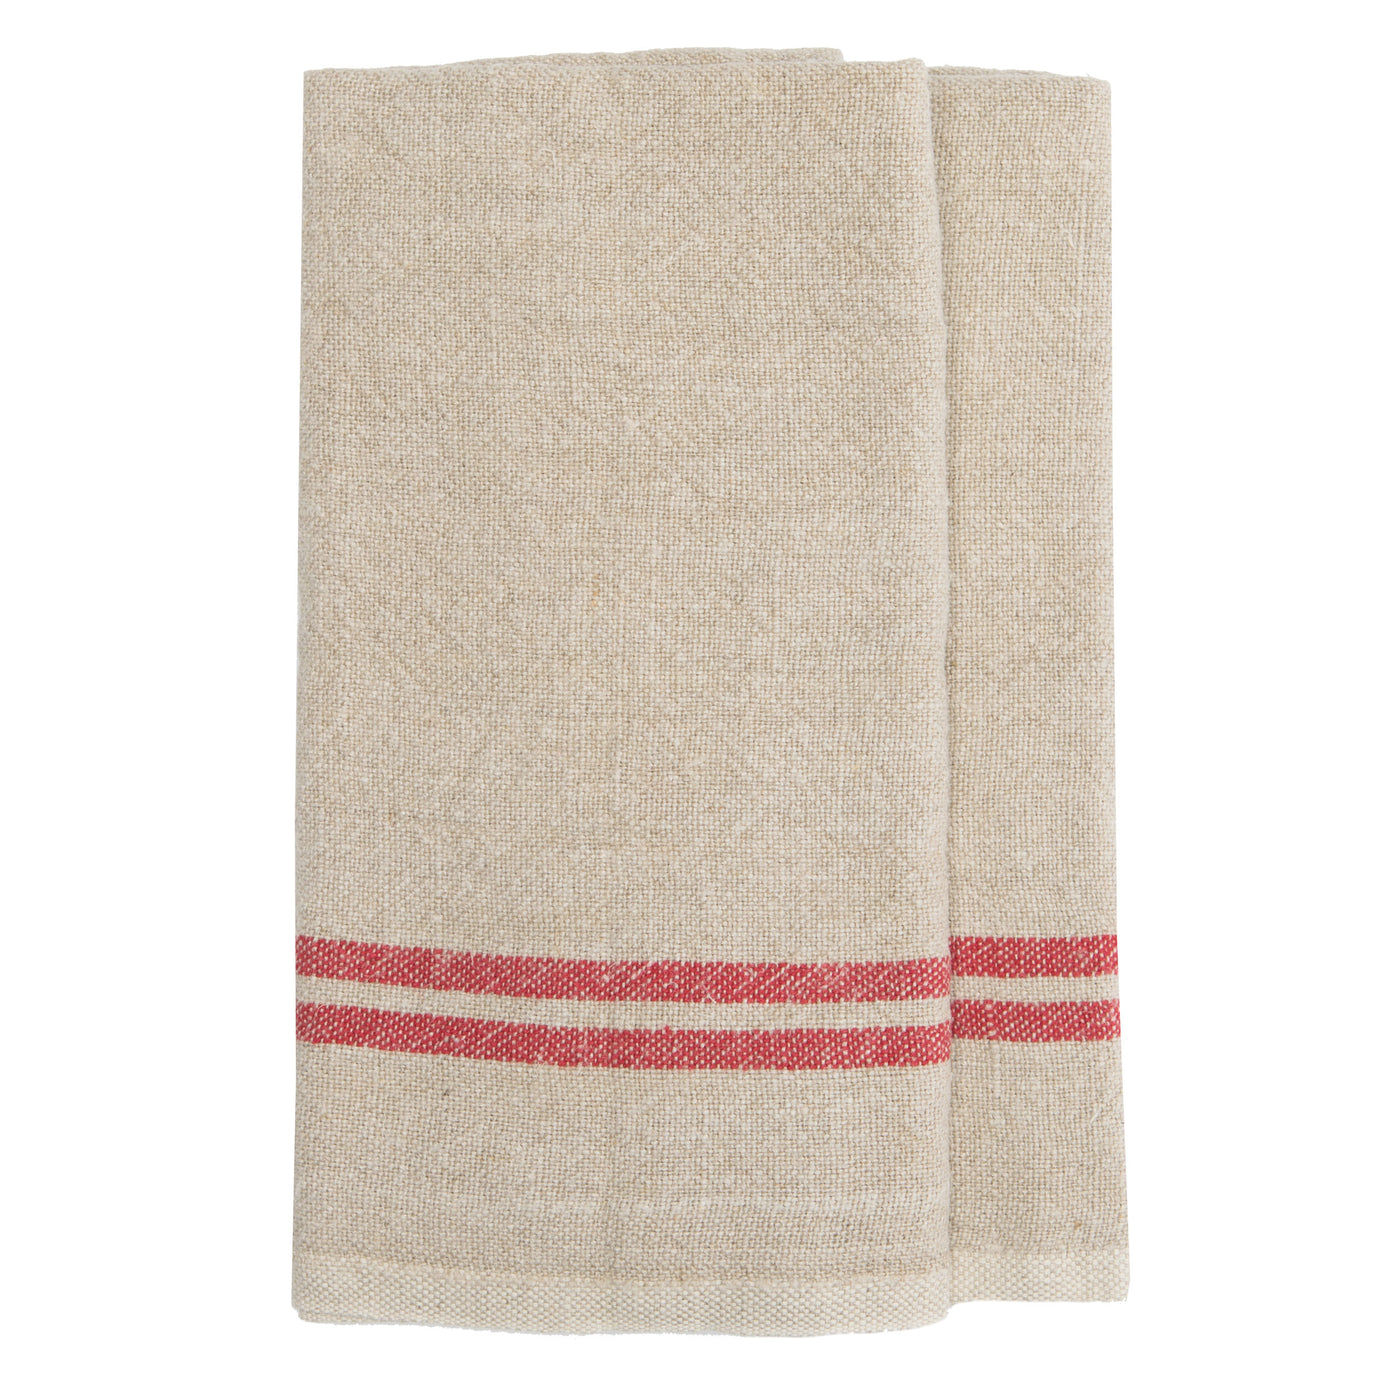 Vintage Linen Kitchen Towels Natural & Red, Set of 2